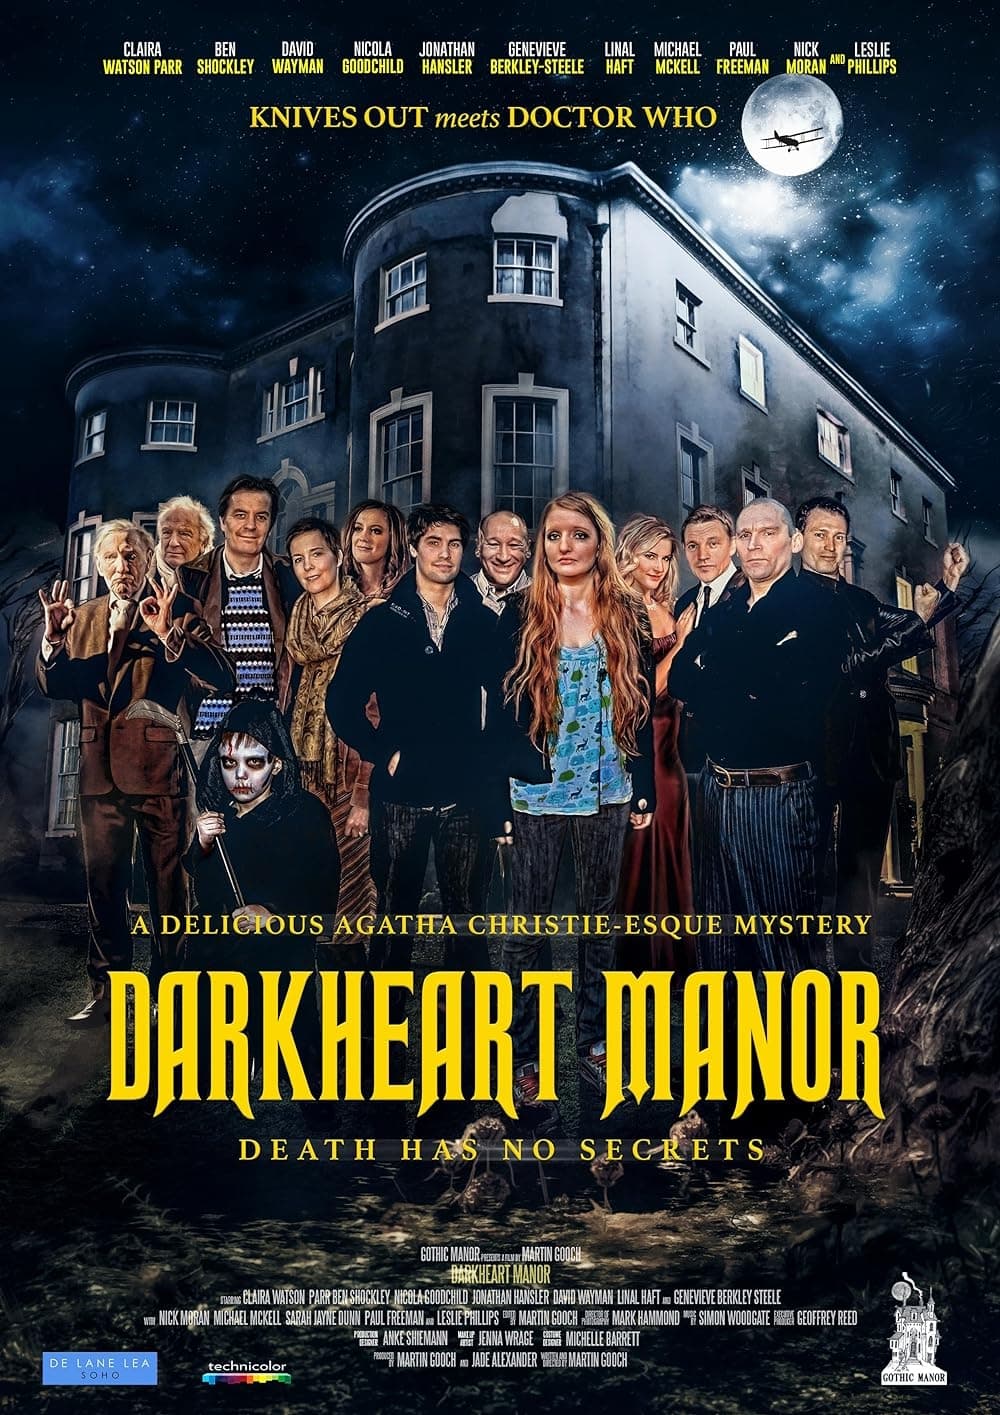 Darkheart Manor